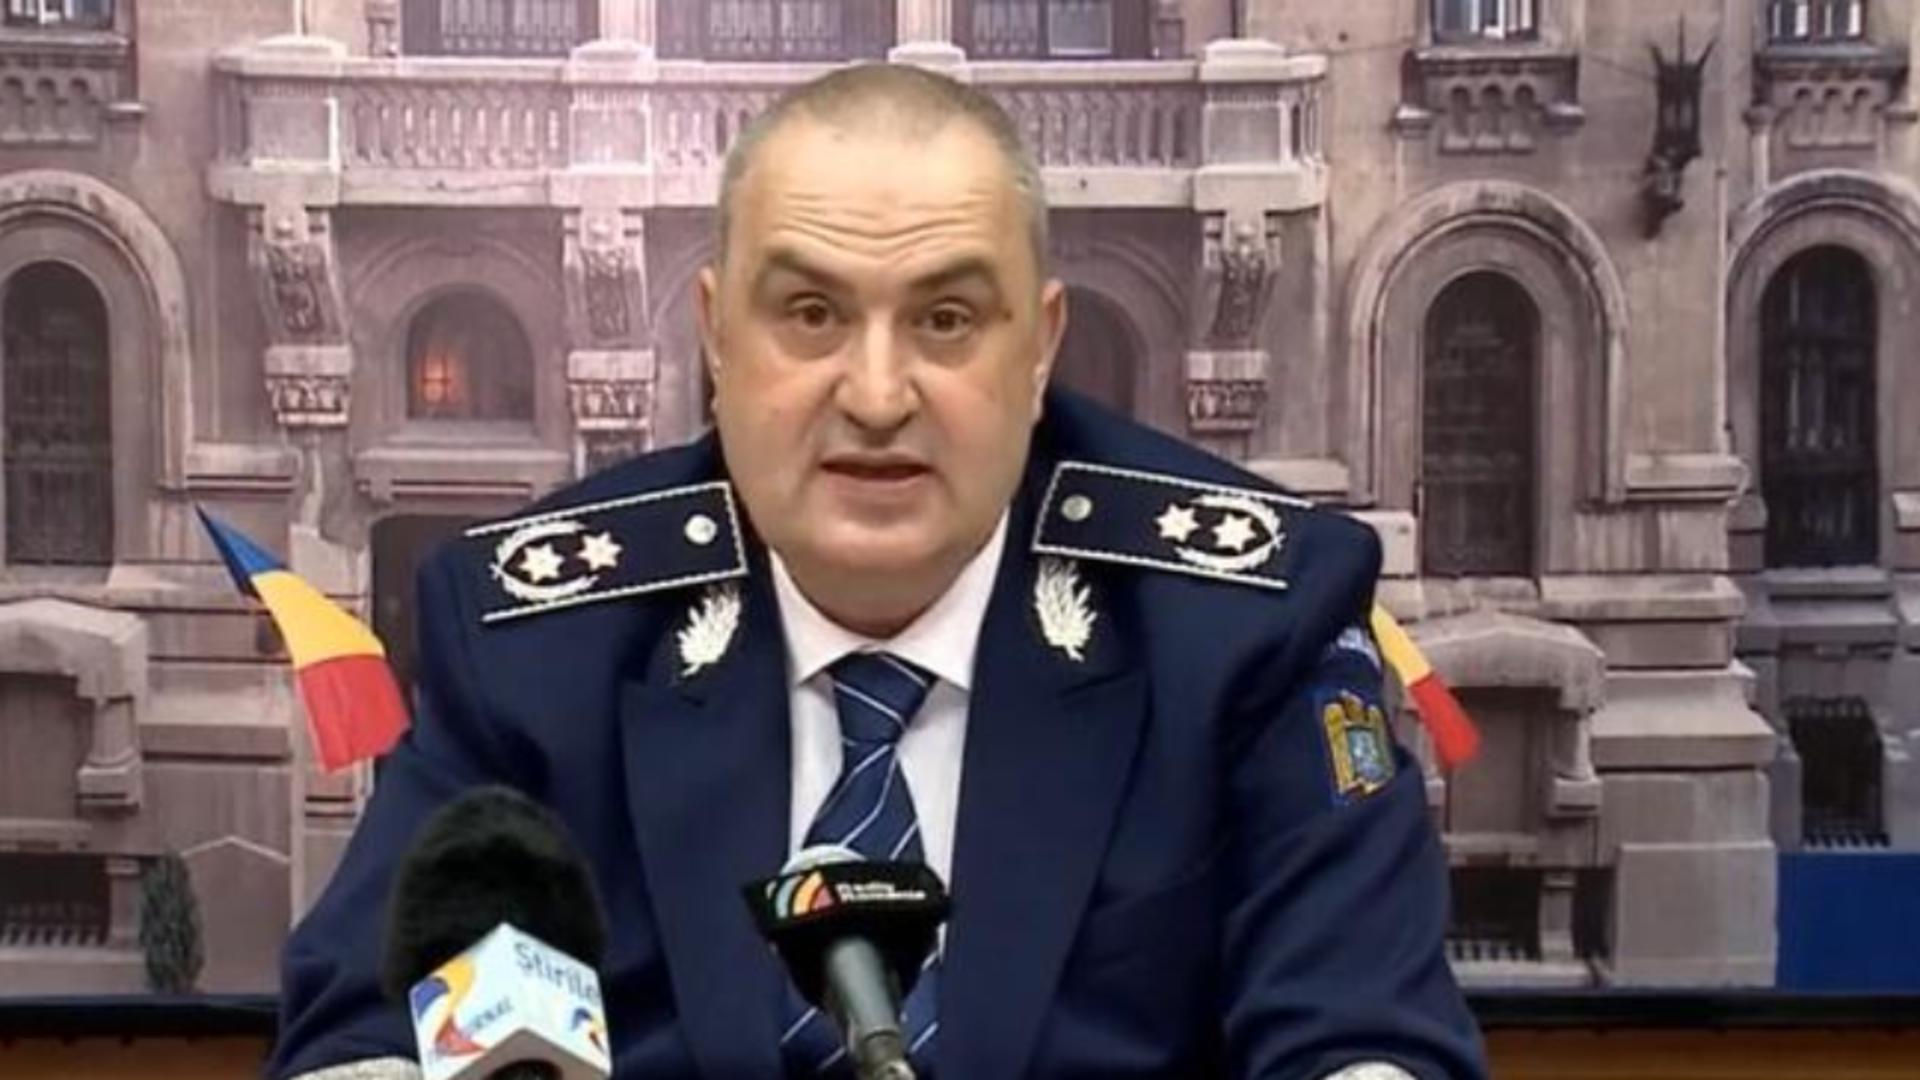 Șeful DGA Liviu Vasilescu s-a pensionat, la 56 de ani – Iohannis a semnat decretul, după dezvăluirile despre legături cu un judecător ÎCCJ 